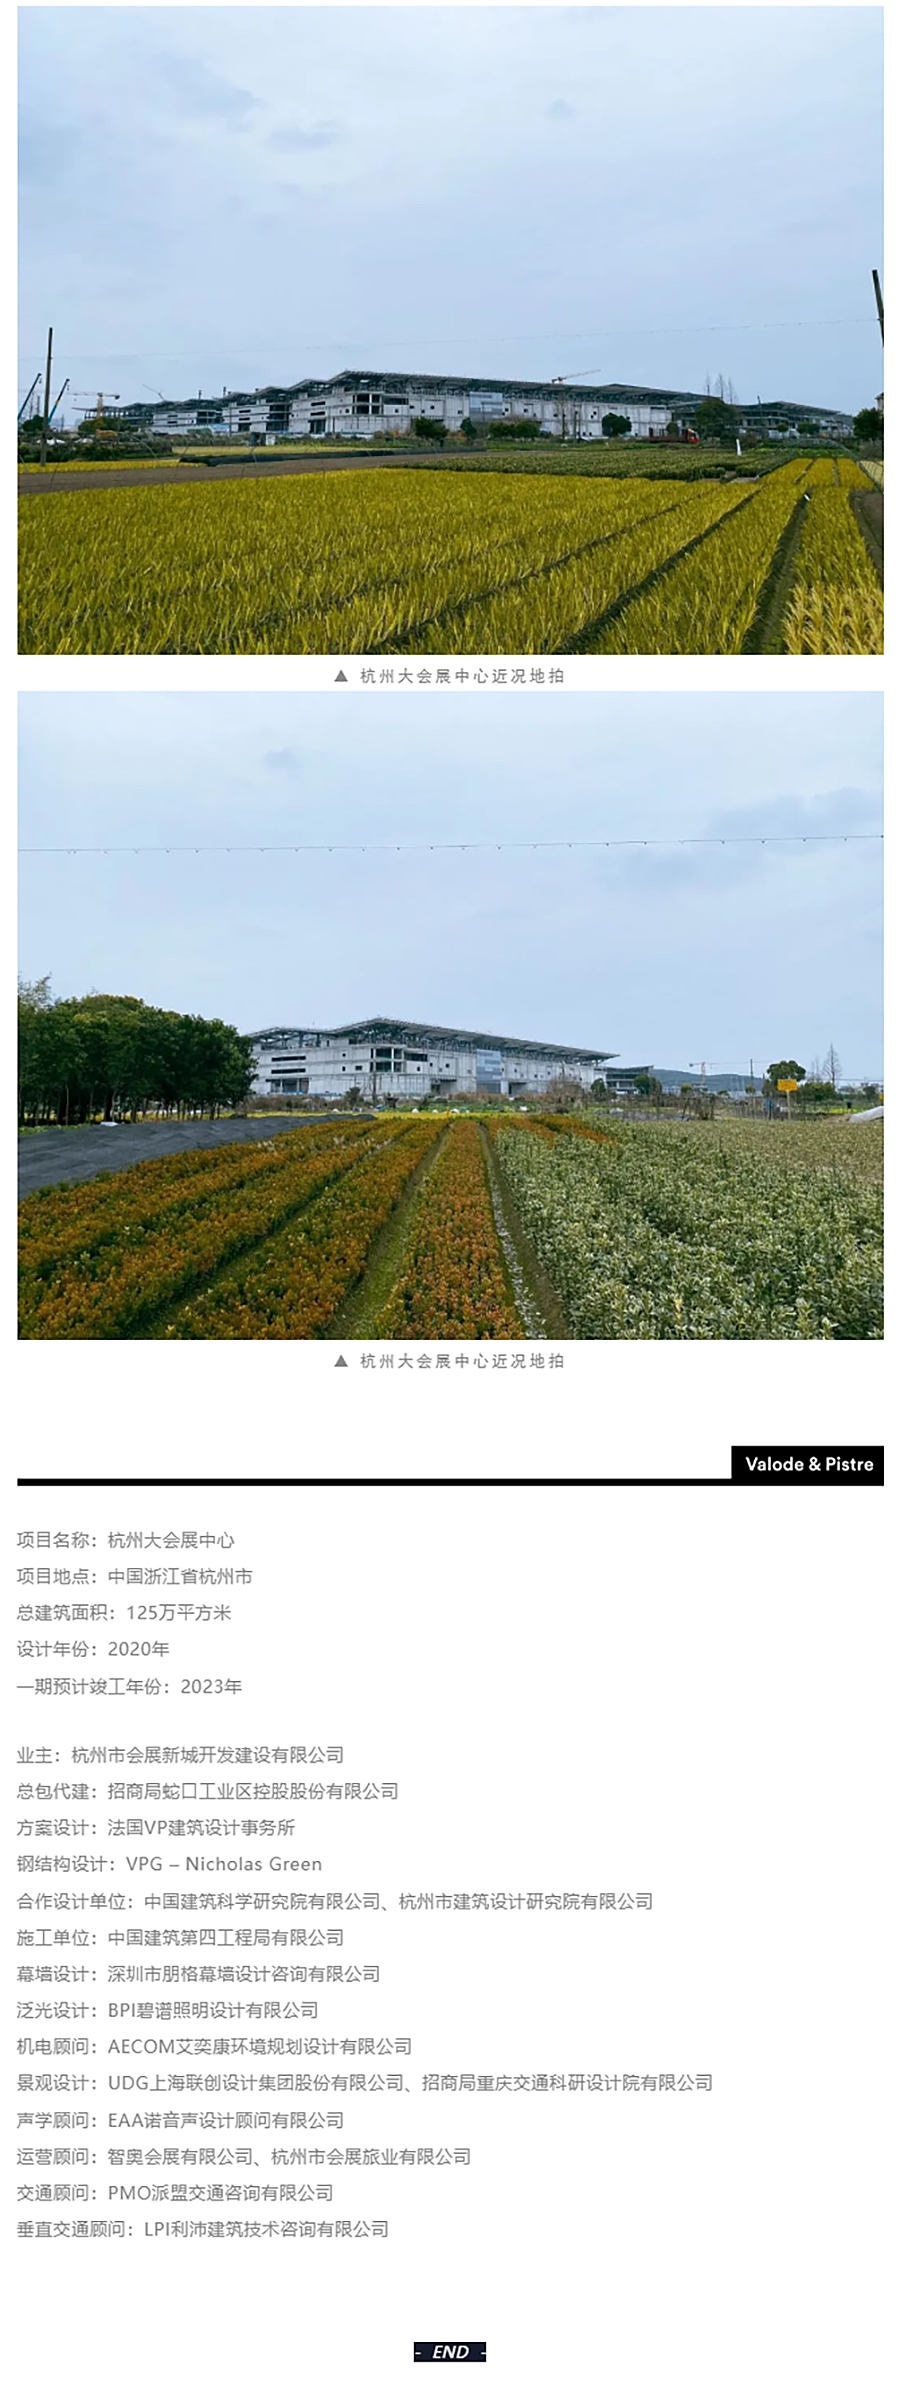 项目近况-_-杭州大会展中心一期展馆钢结构已全面结顶_0004_图层-5 拷贝.jpg